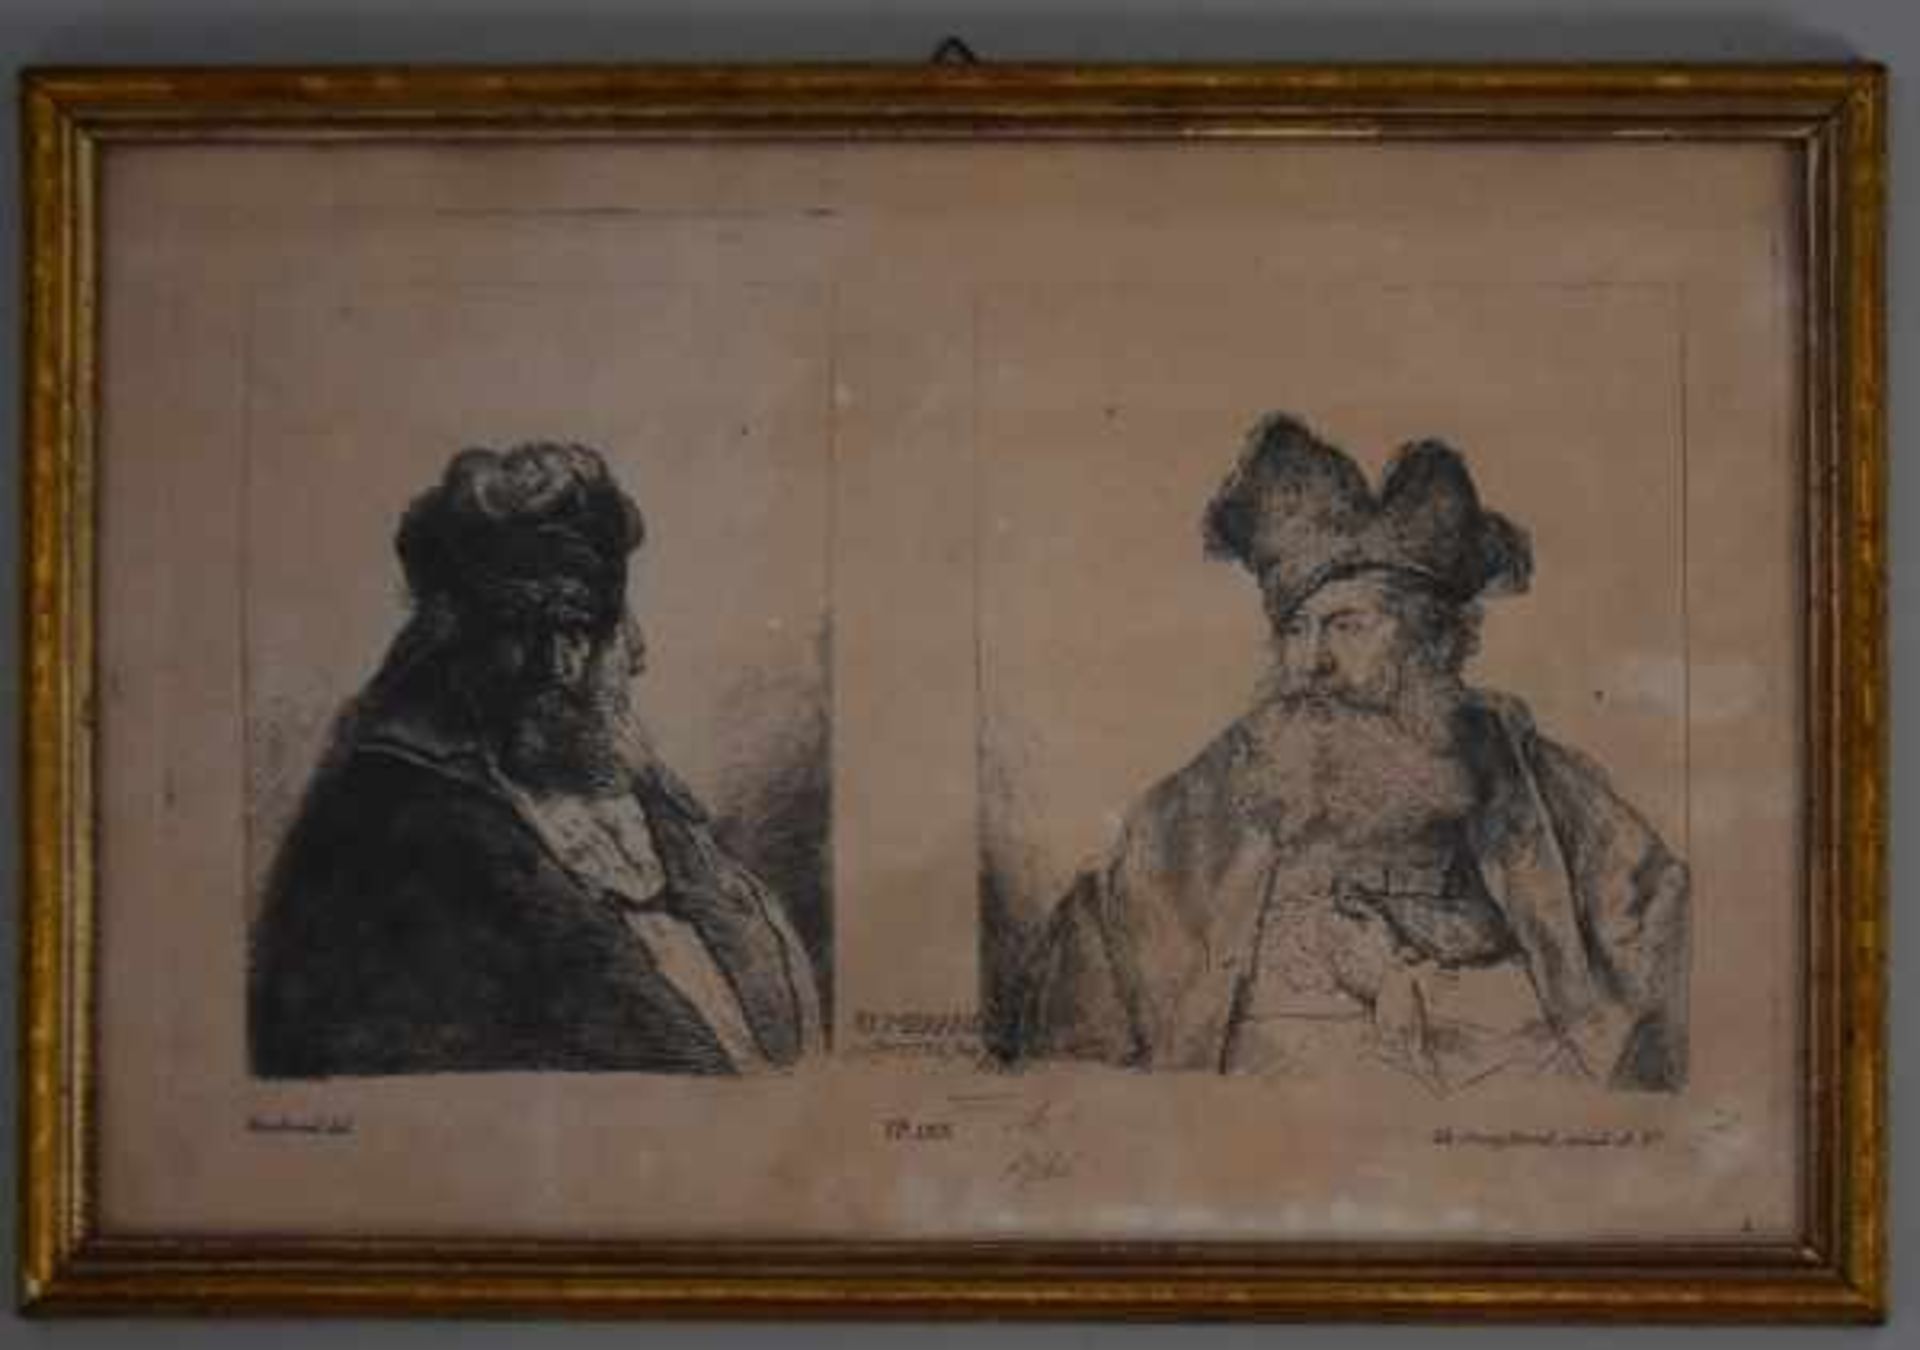 HERTEL Georg Johannes(18.Jh.) "Rembrand(t)", Kopie nach Rembrandt mit zwei Ansichten, No 183, - Bild 2 aus 3